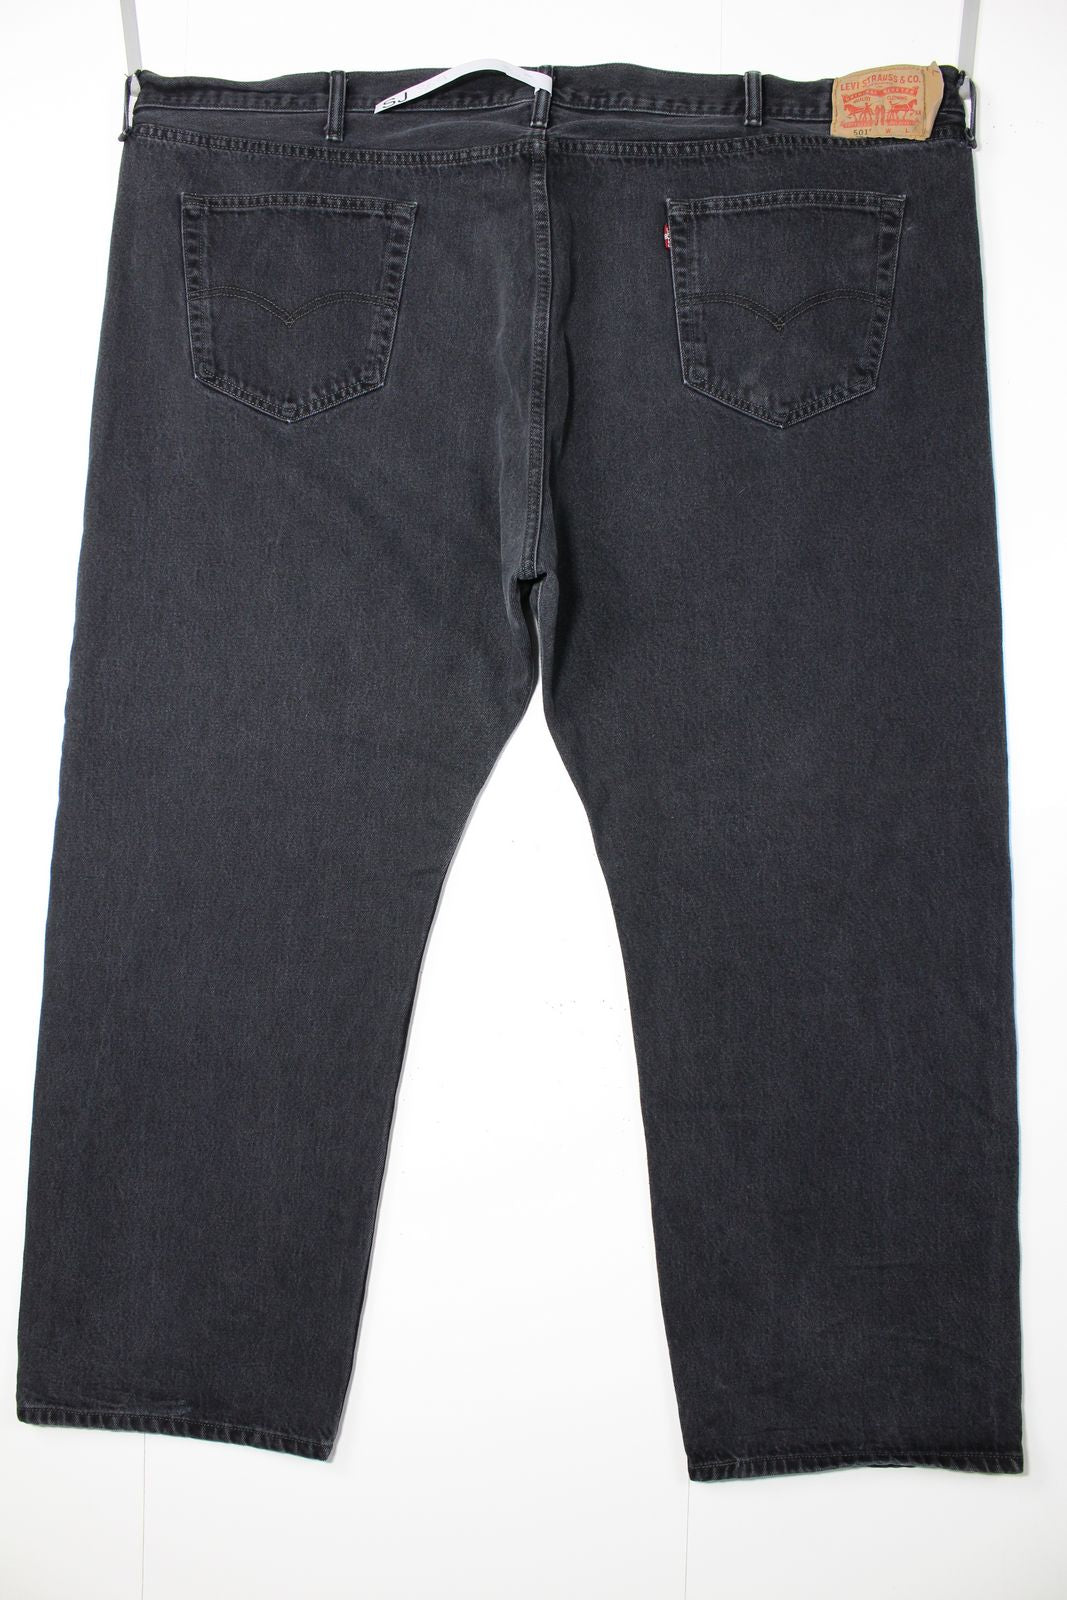 Levi's 501 Nero W56 L32 Jeans Vintage